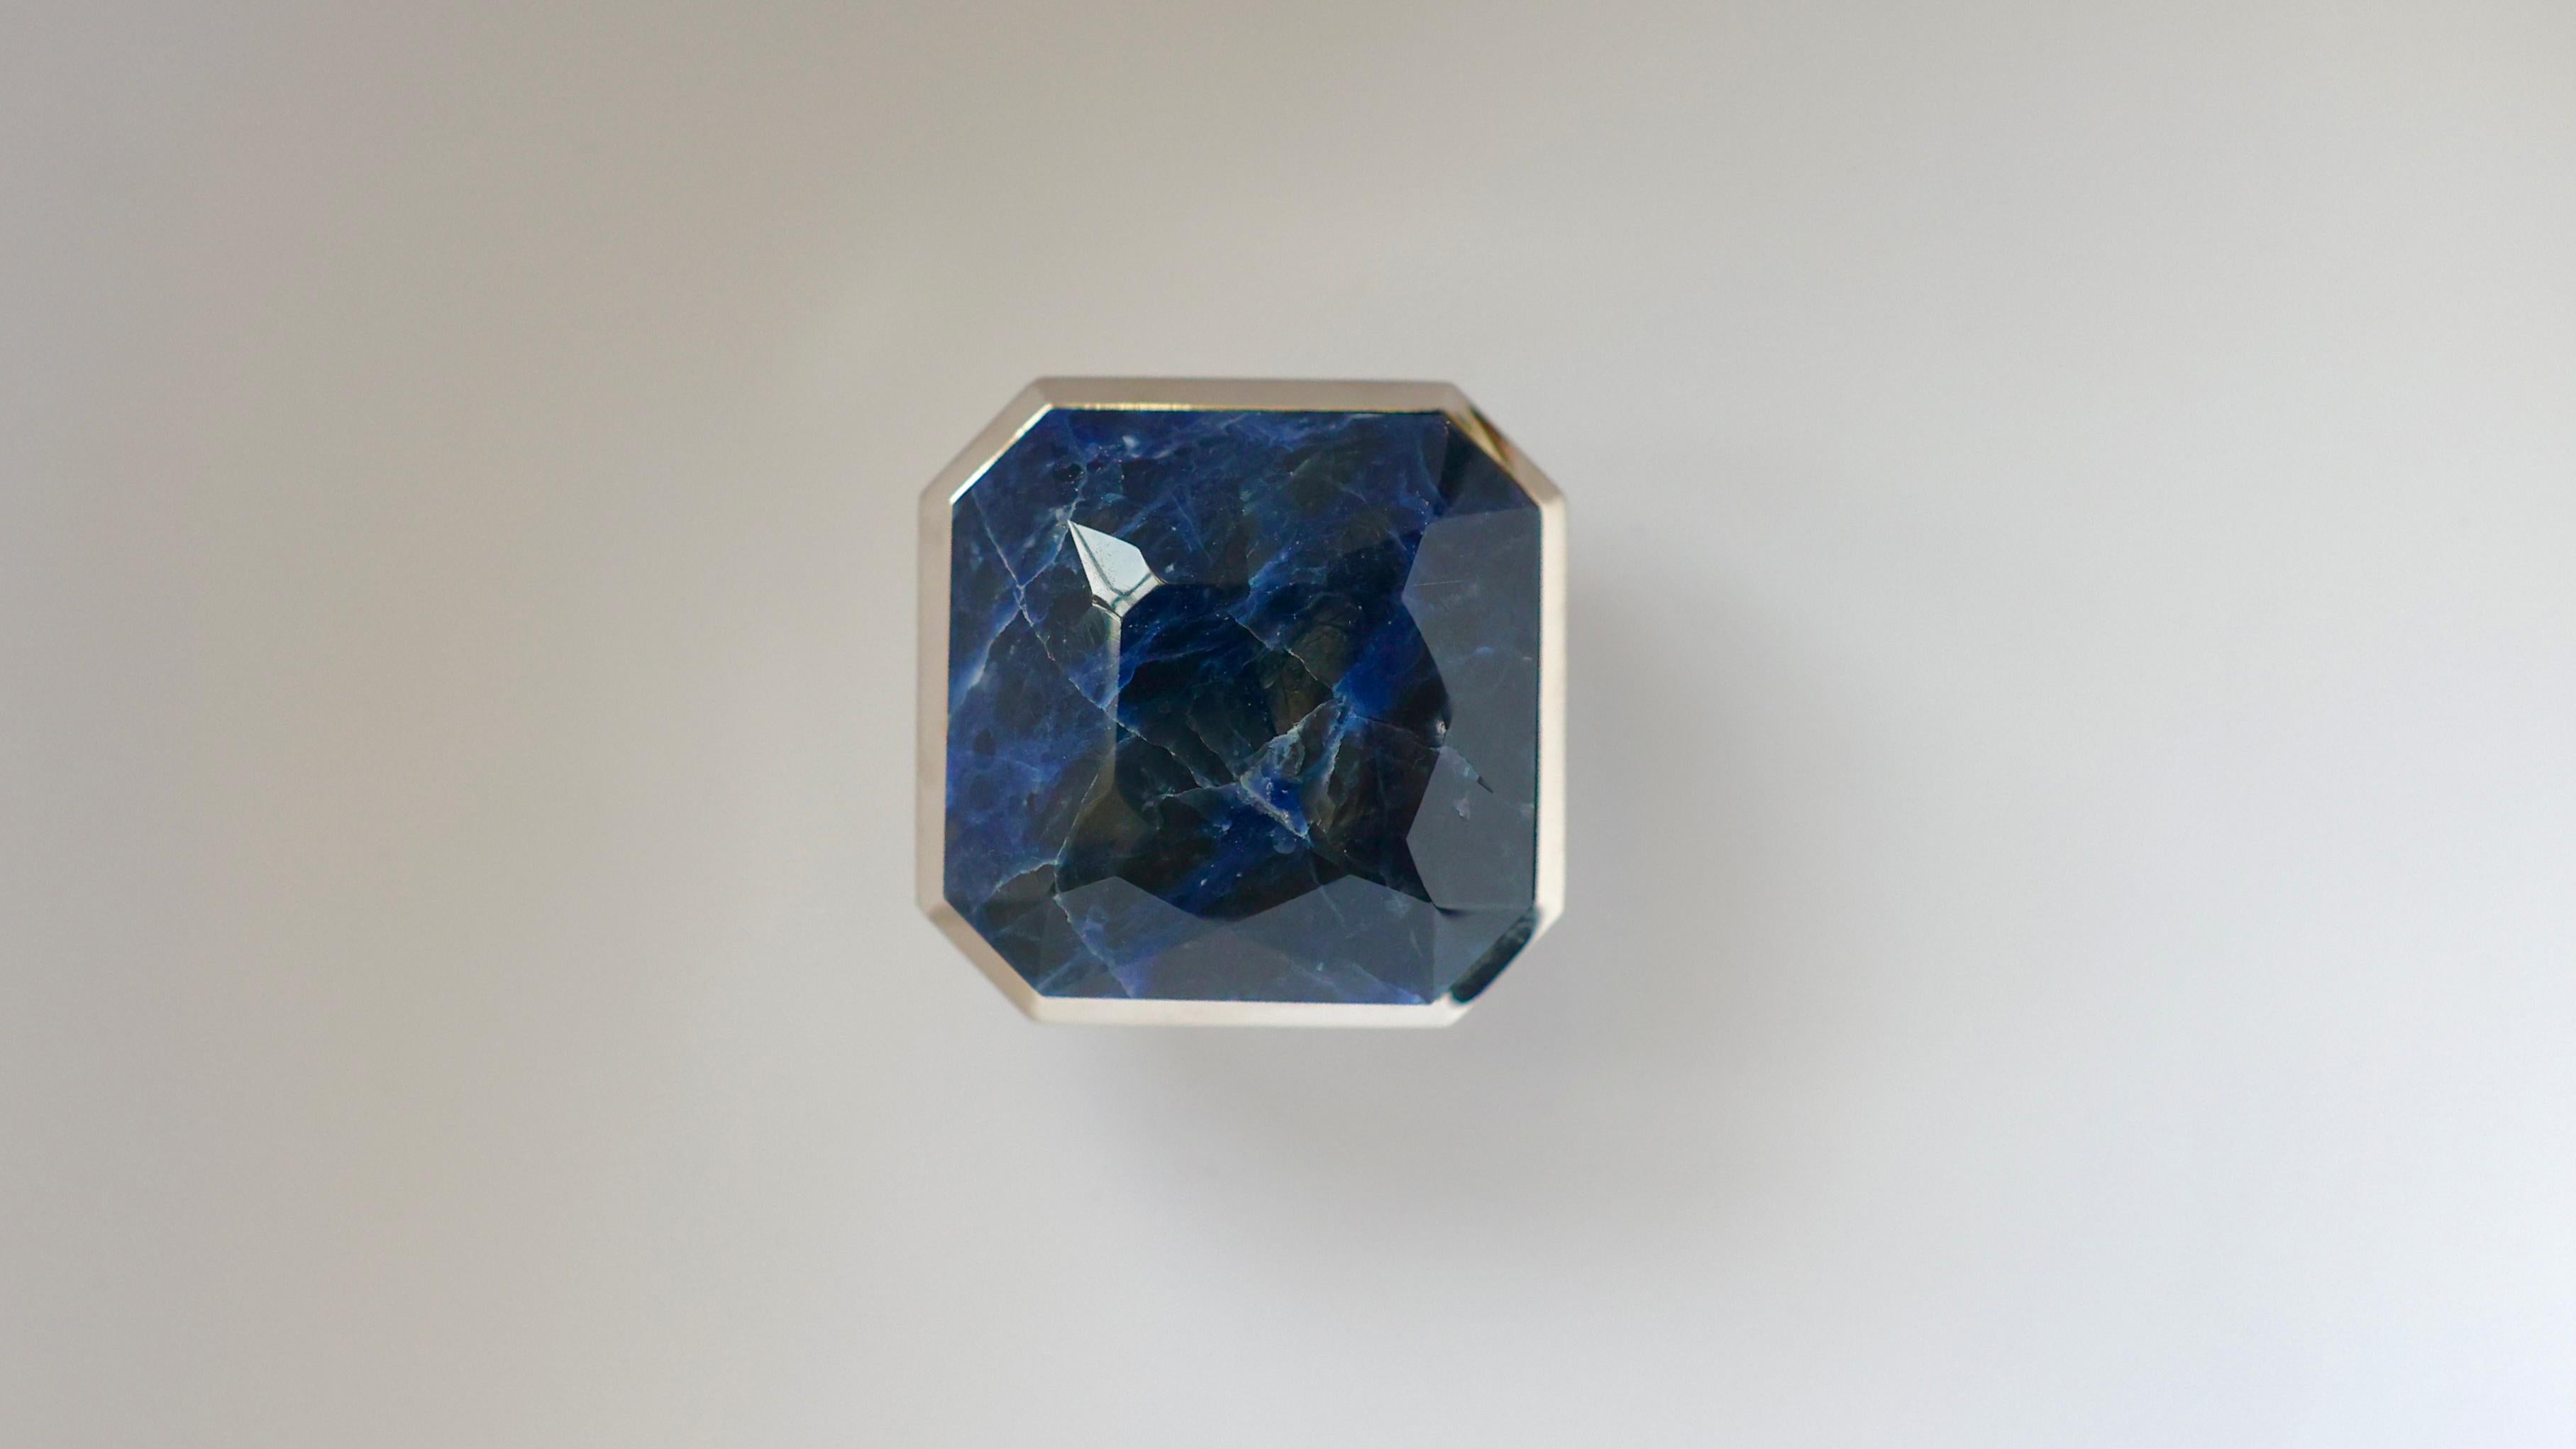 Boutons en Lapis Lazuli taillé en diamant avec décoration en laiton poli, créés par Phoenix 

Finition métallique et dimensions personnalisées sur demande.

